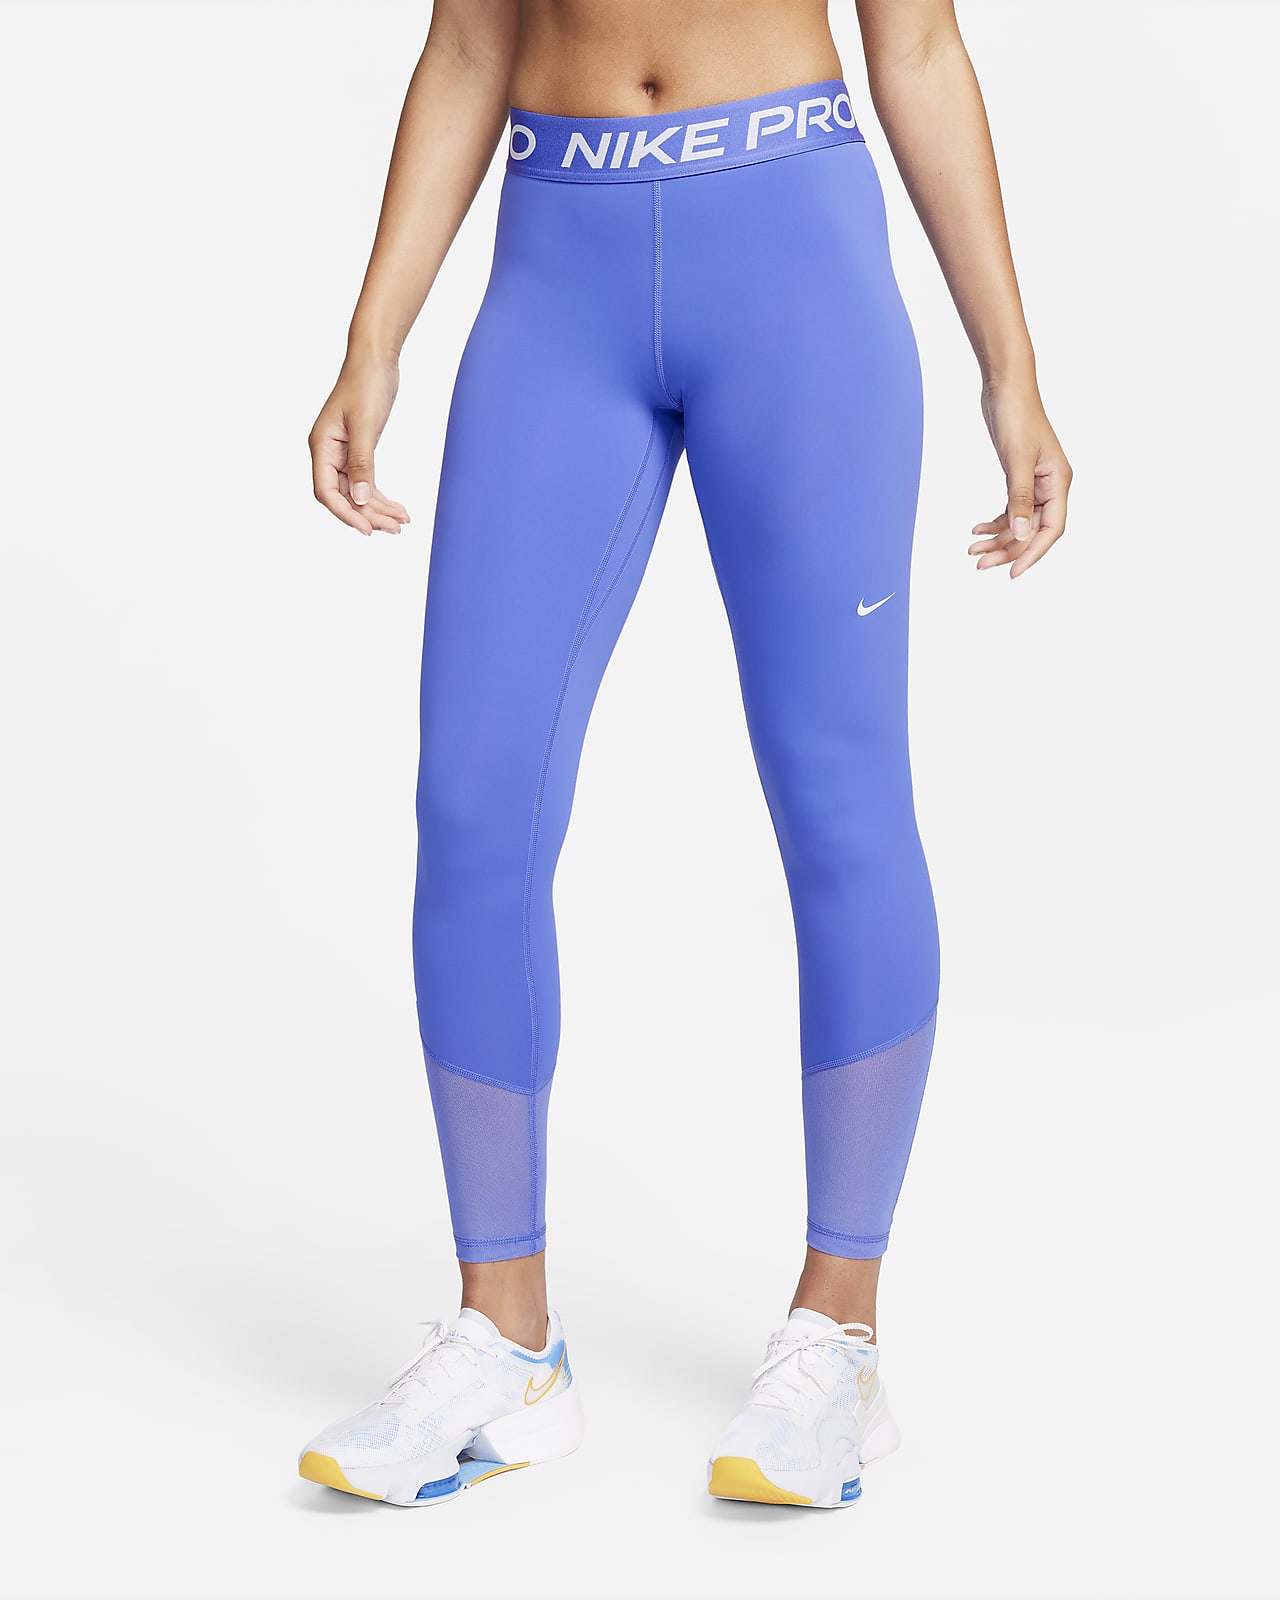 Nike Pro Women's Mid-Rise Full-Length Leggings. Nike PT